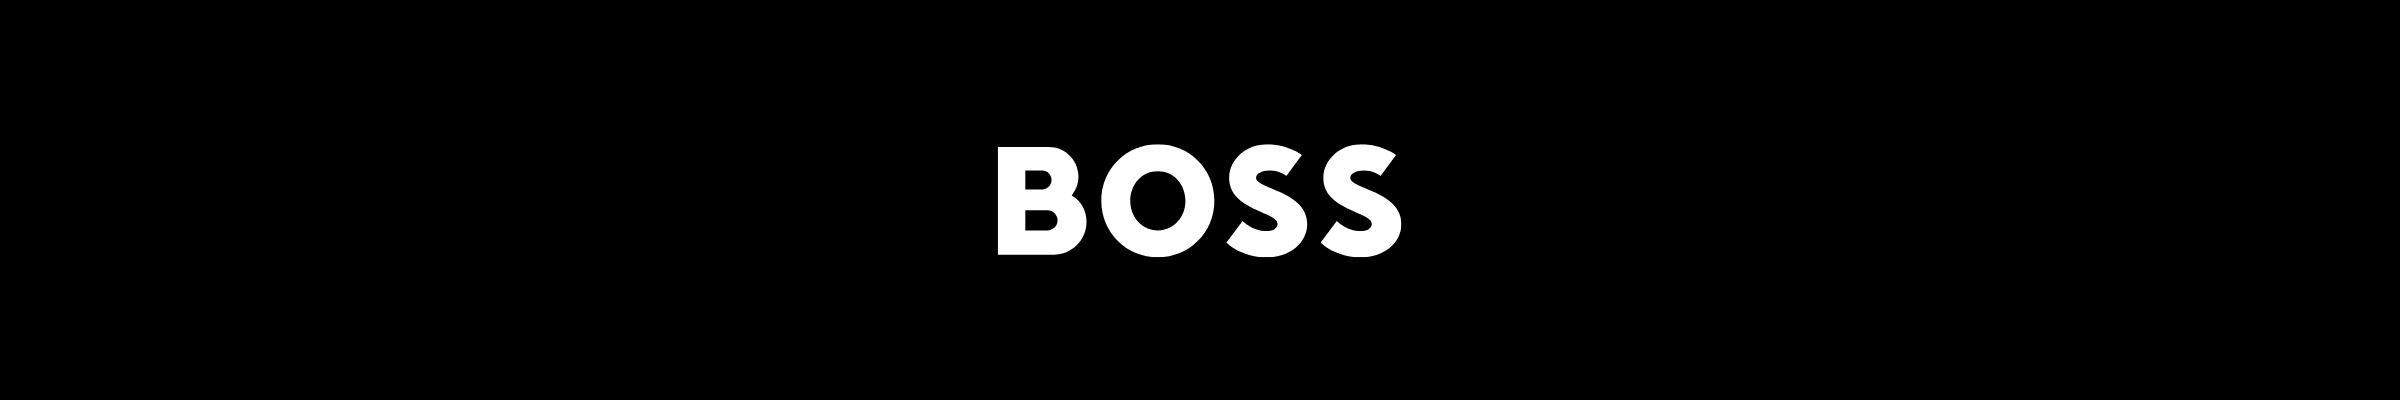 boss-banner-26thJan